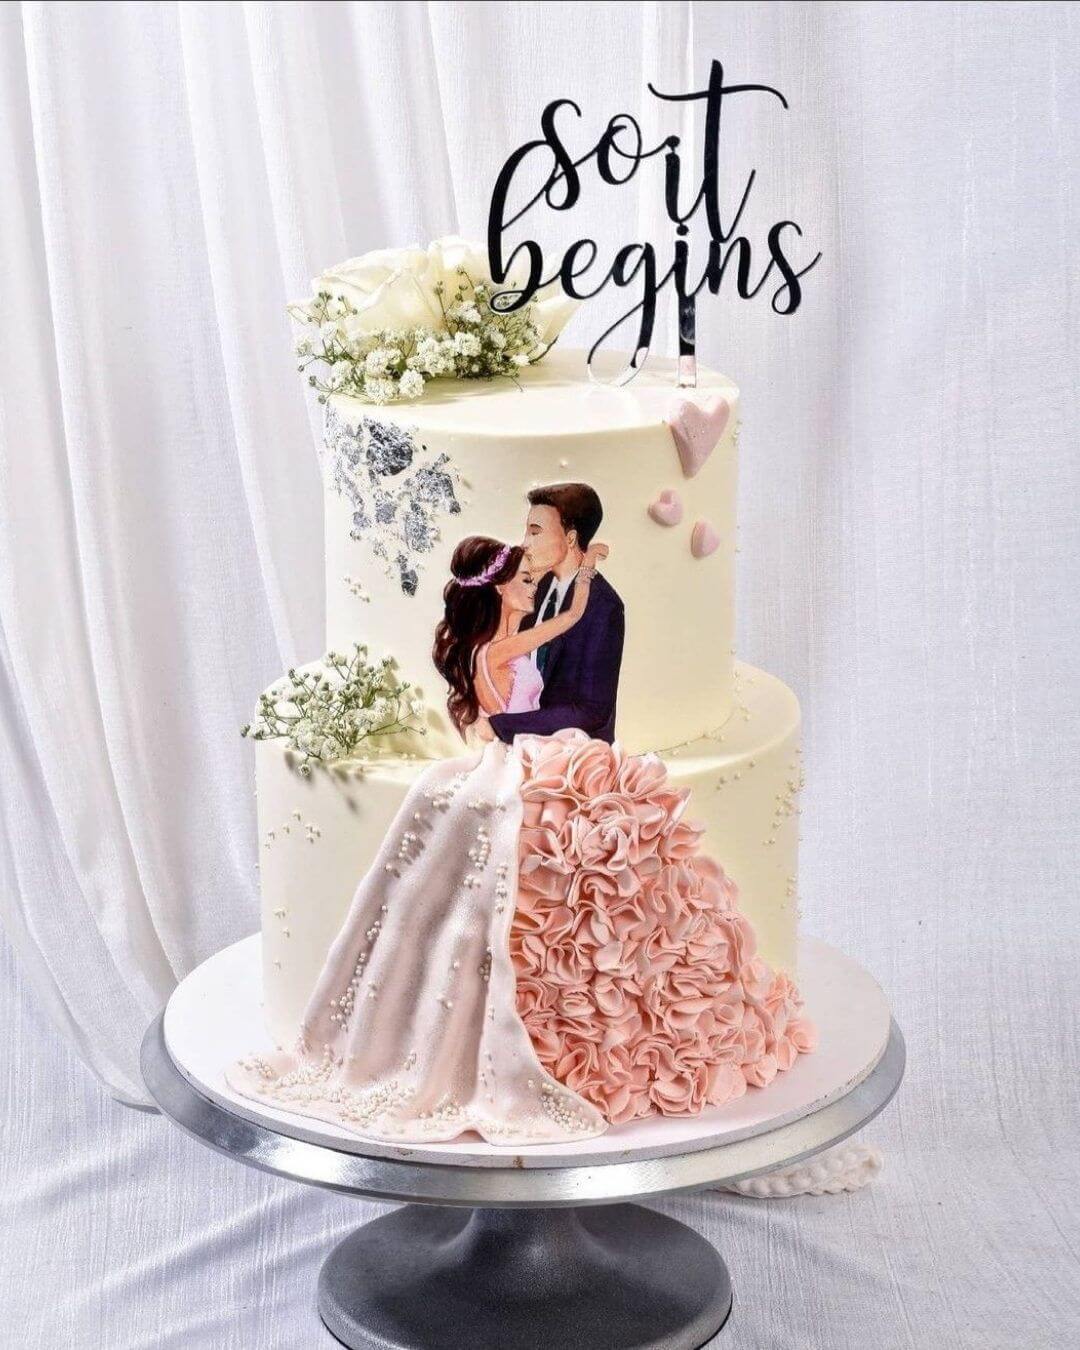 Explore 170+ engagement cake designs best